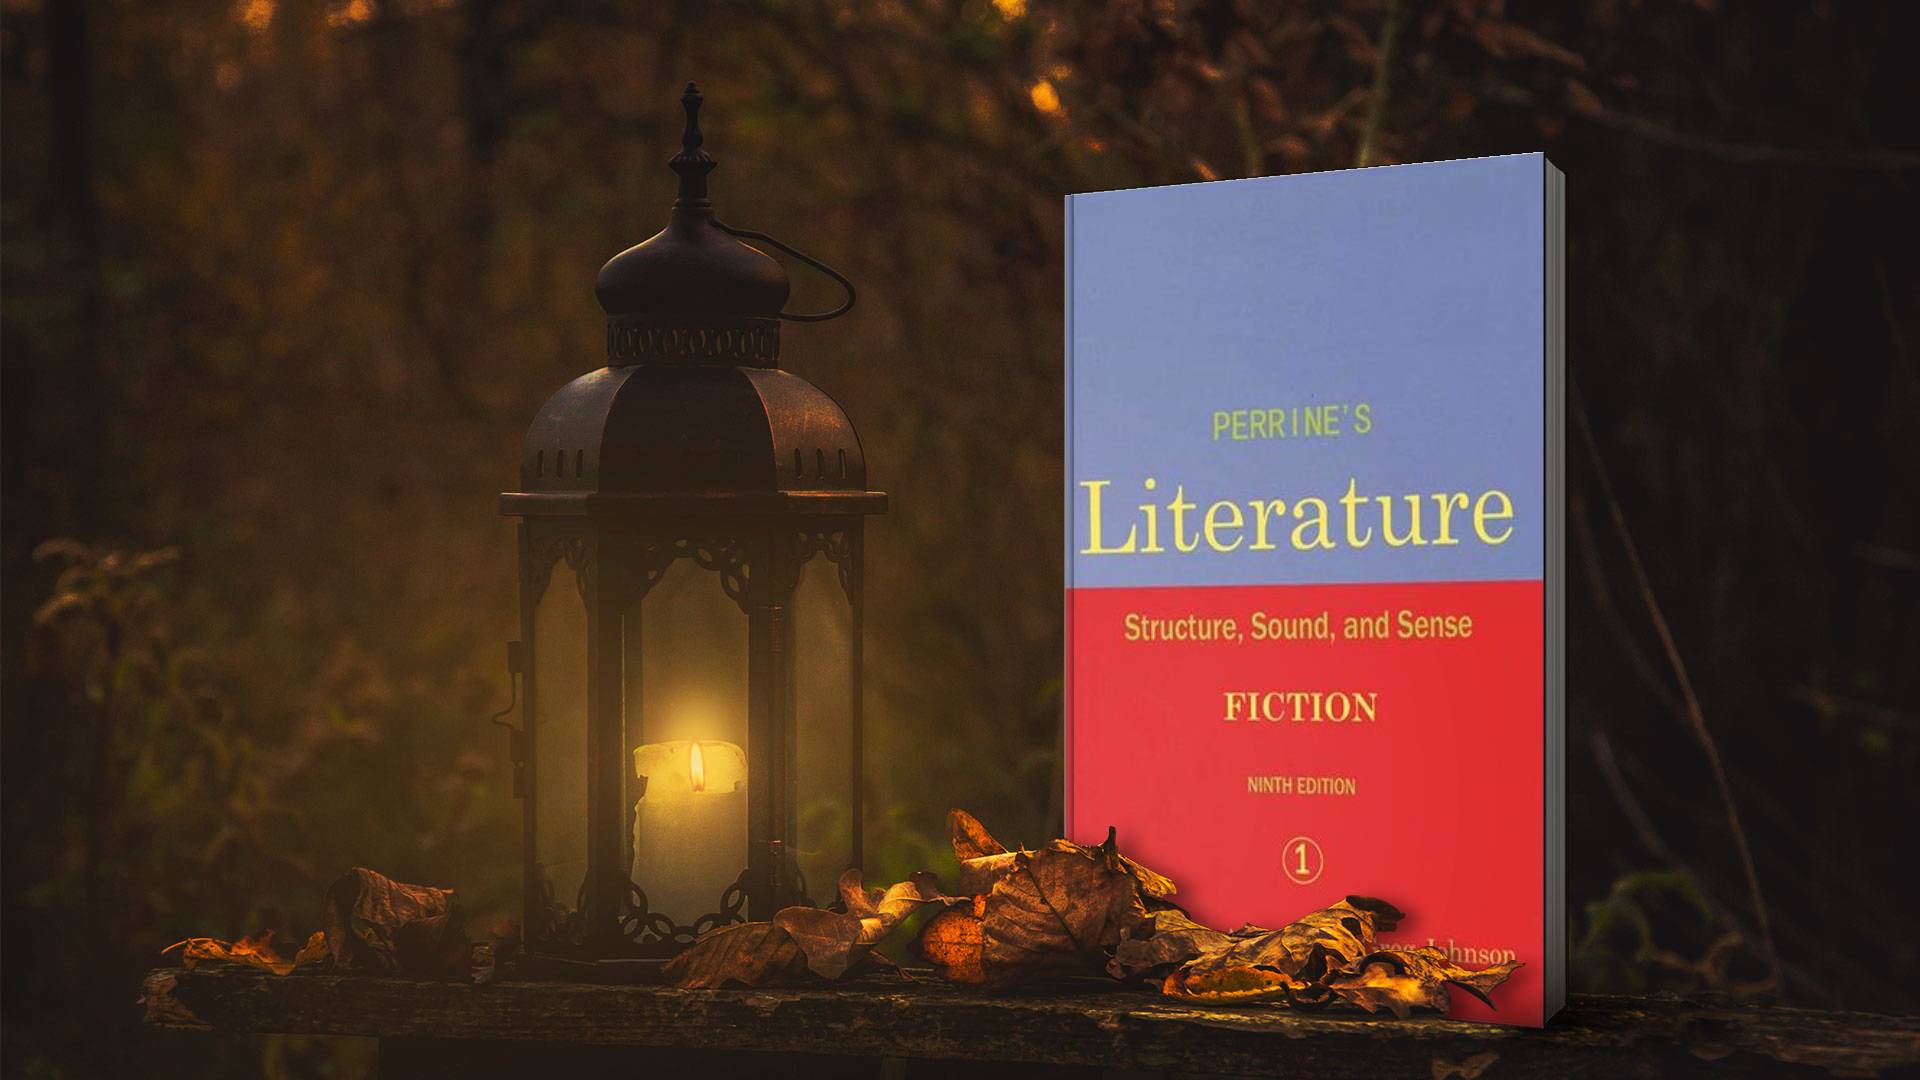 خرید کتاب زبان ادبیات دانشگاهی | فروشگاه اینترنتی کتاب زبان | Perrine’s Literature Structure Sound and Sense Fiction 1 Ninth Edition | پرینز لیتریچر استراکچر فیکشن ویرایش نهم